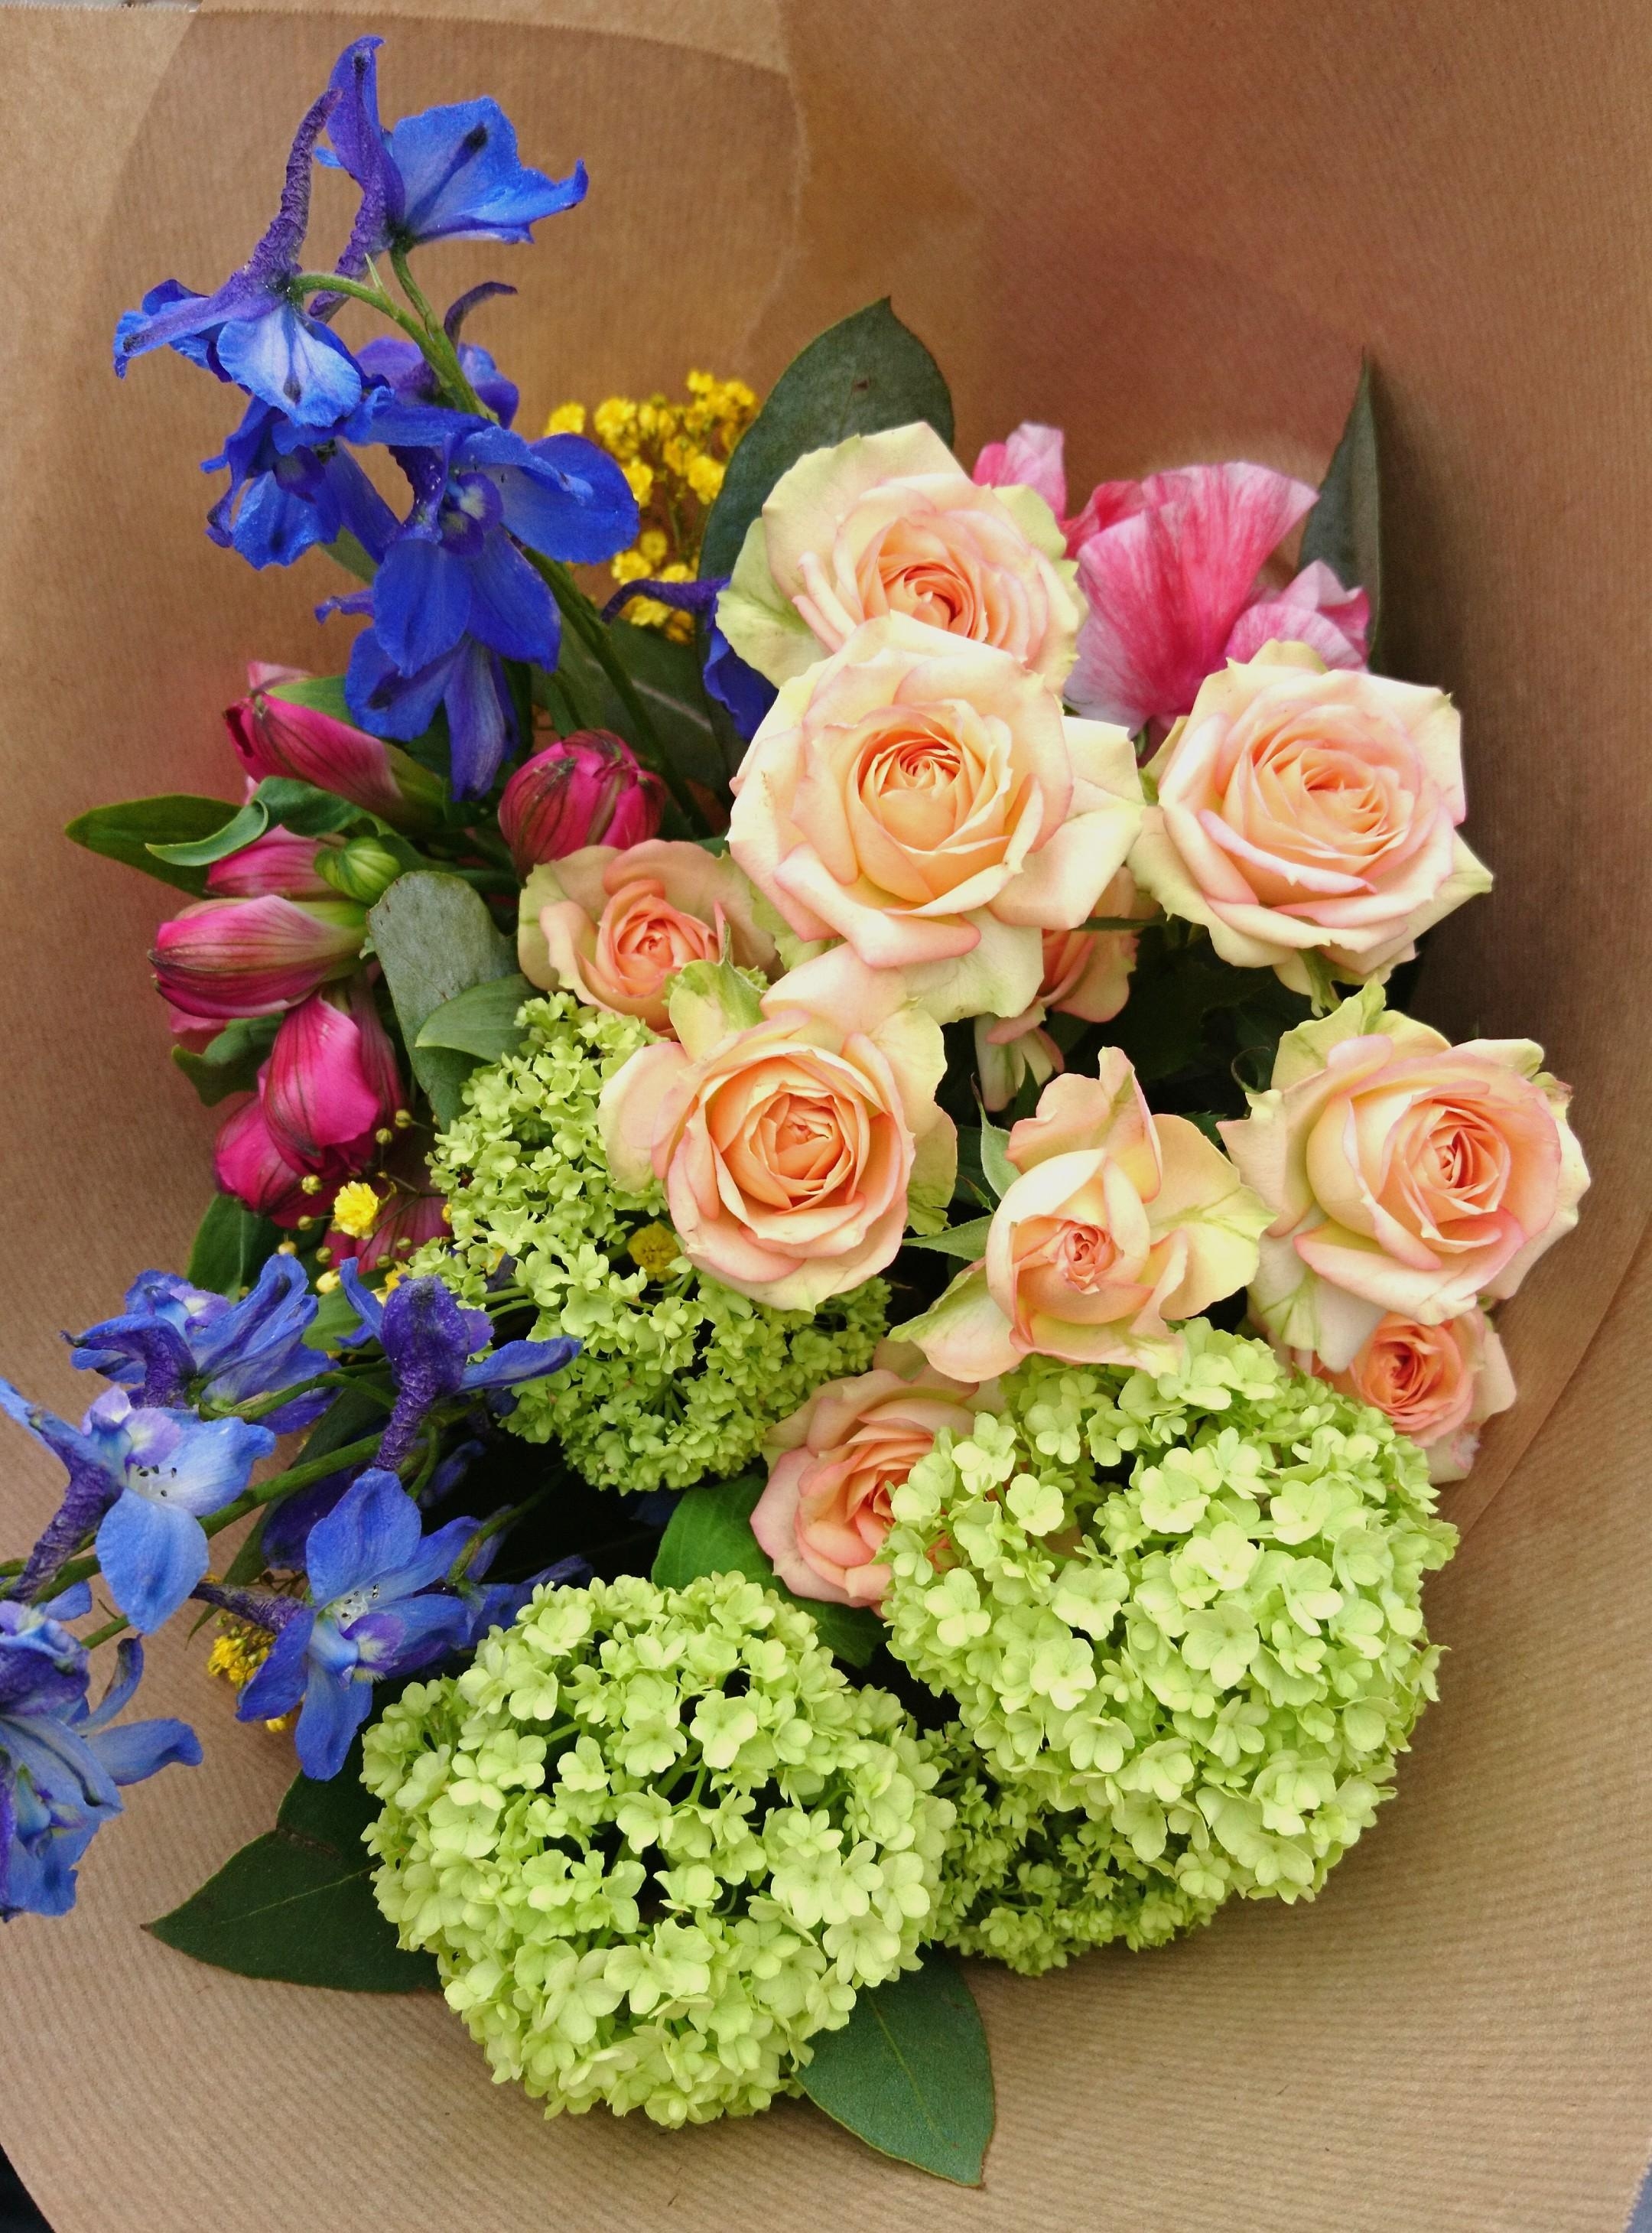 Macht euch ein wunderschönes Wochenende! 🤩🌸 
#flowers #Blumenliebe #Blumen #Blumenstrauß #freshflowerfriday